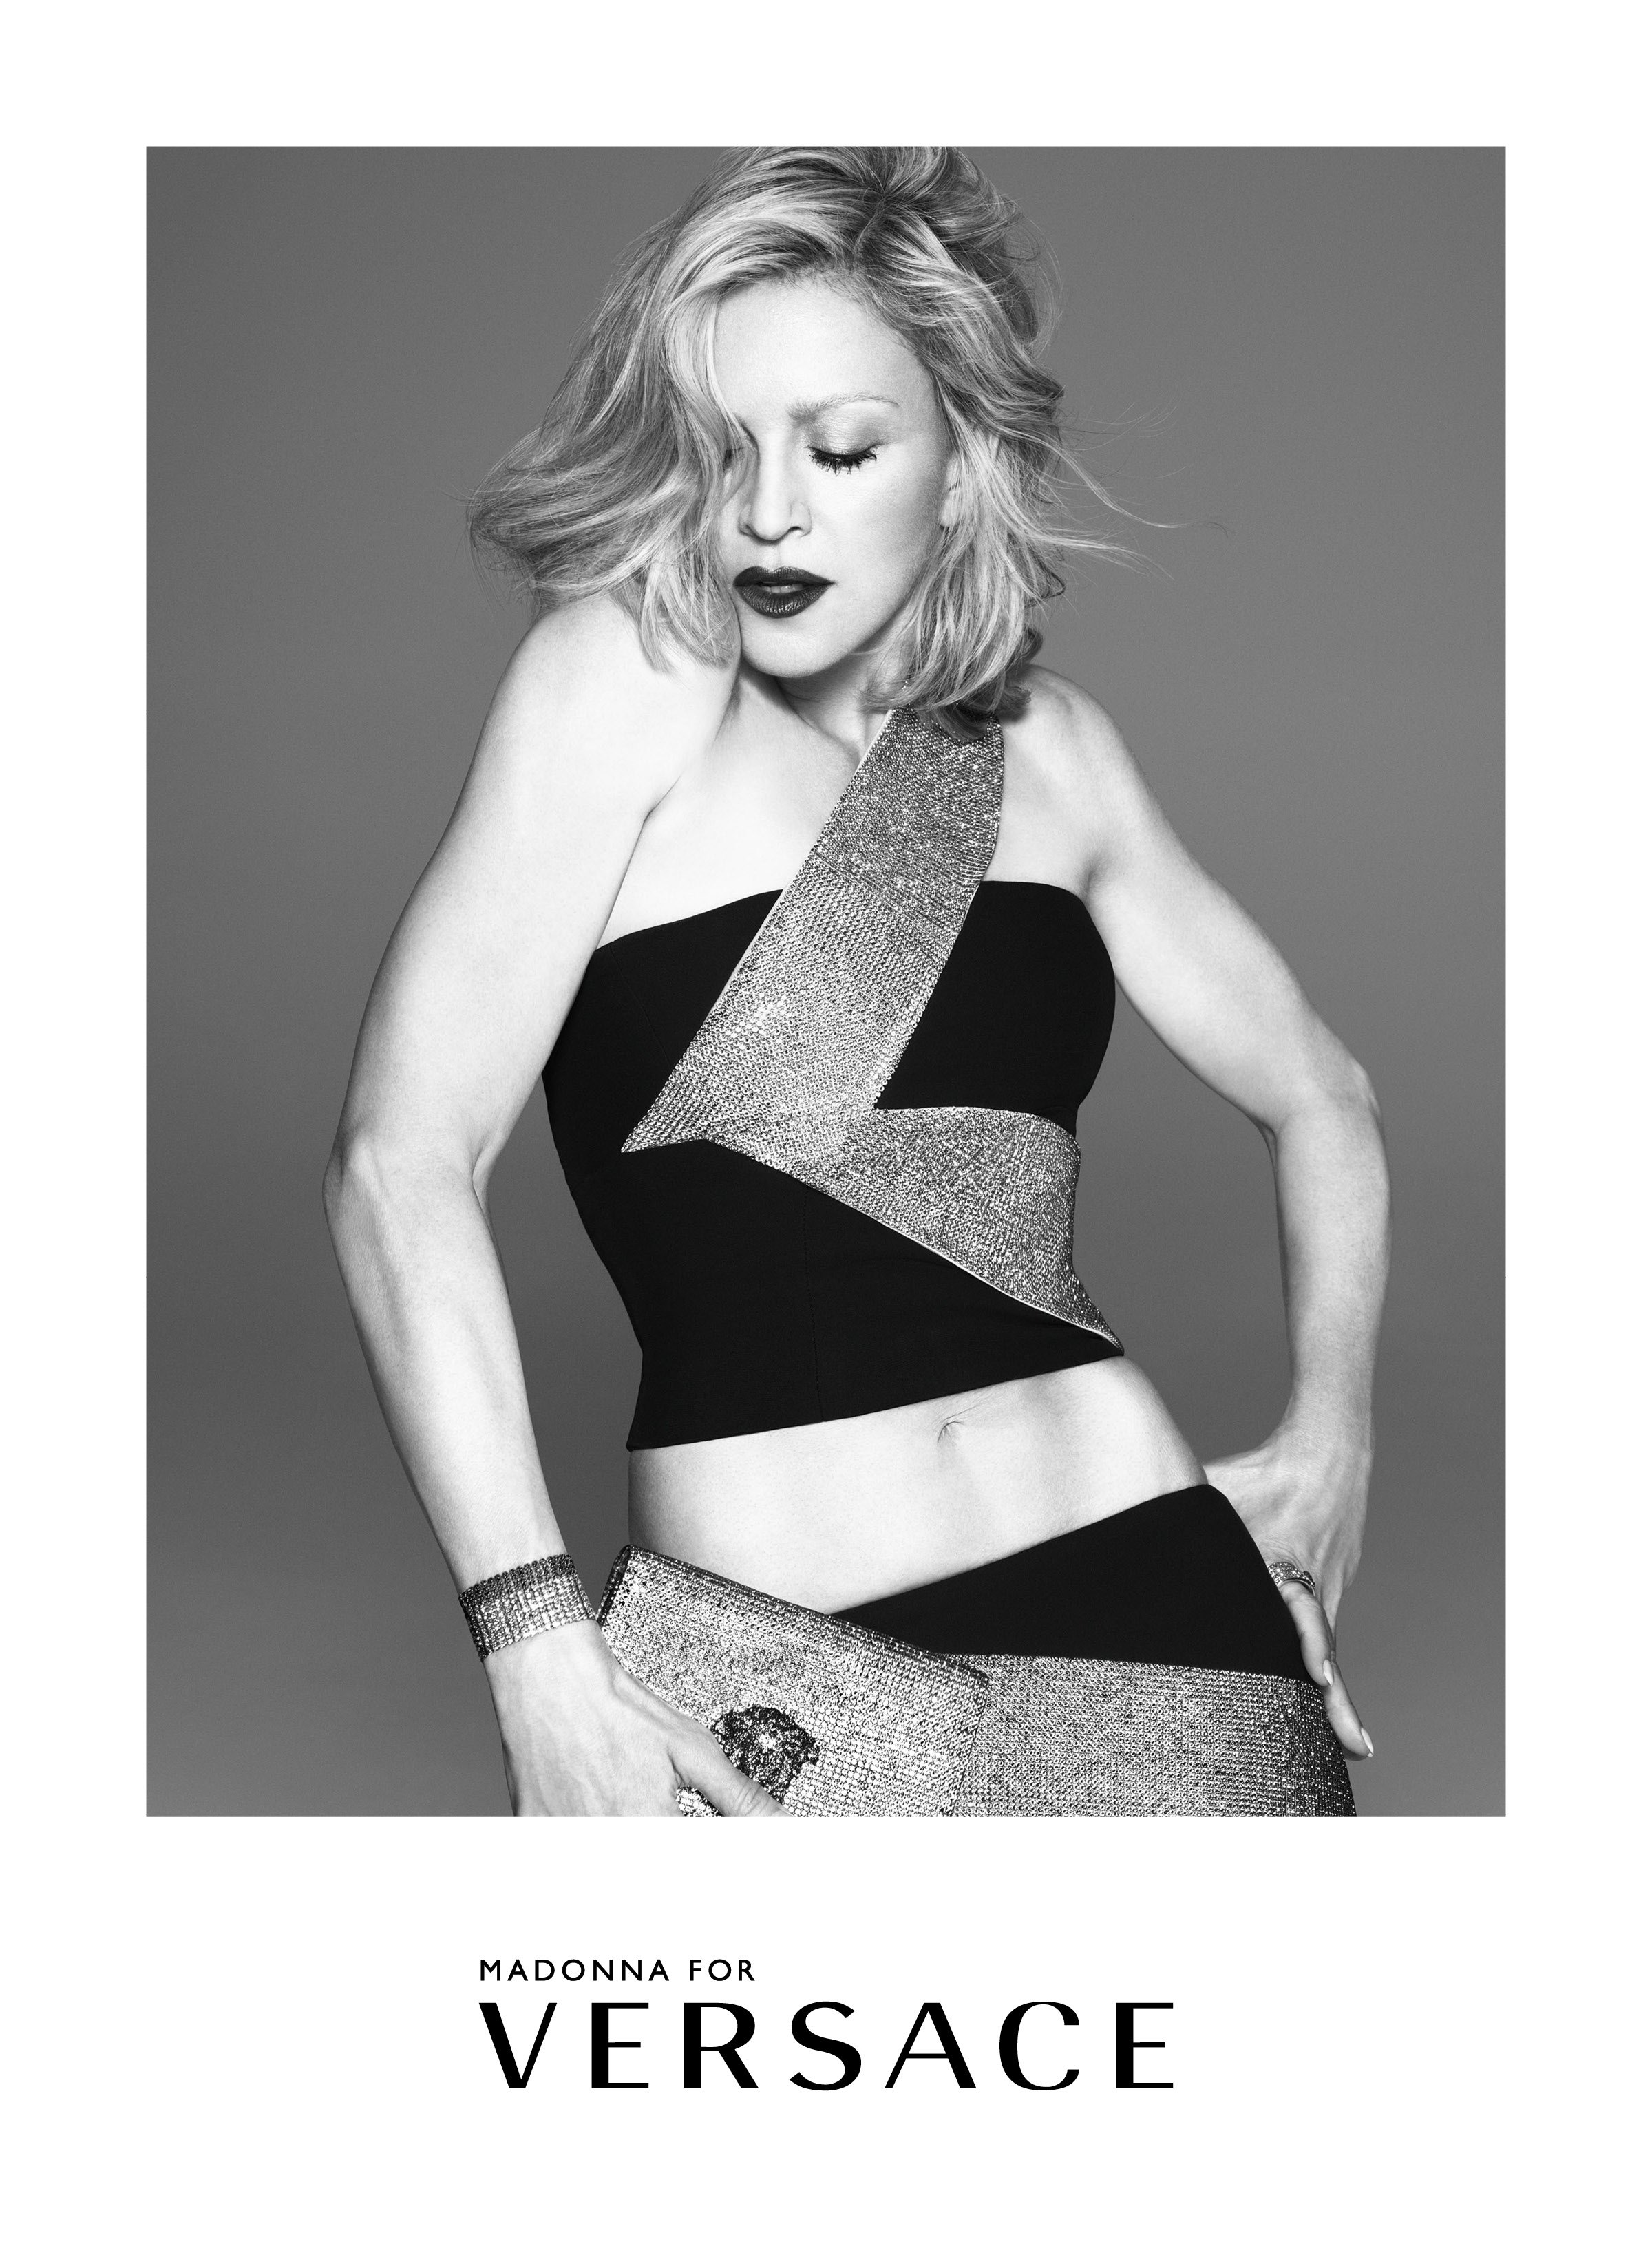 流行教母Madonna時隔10年，再度為Versace廣告代言人 2